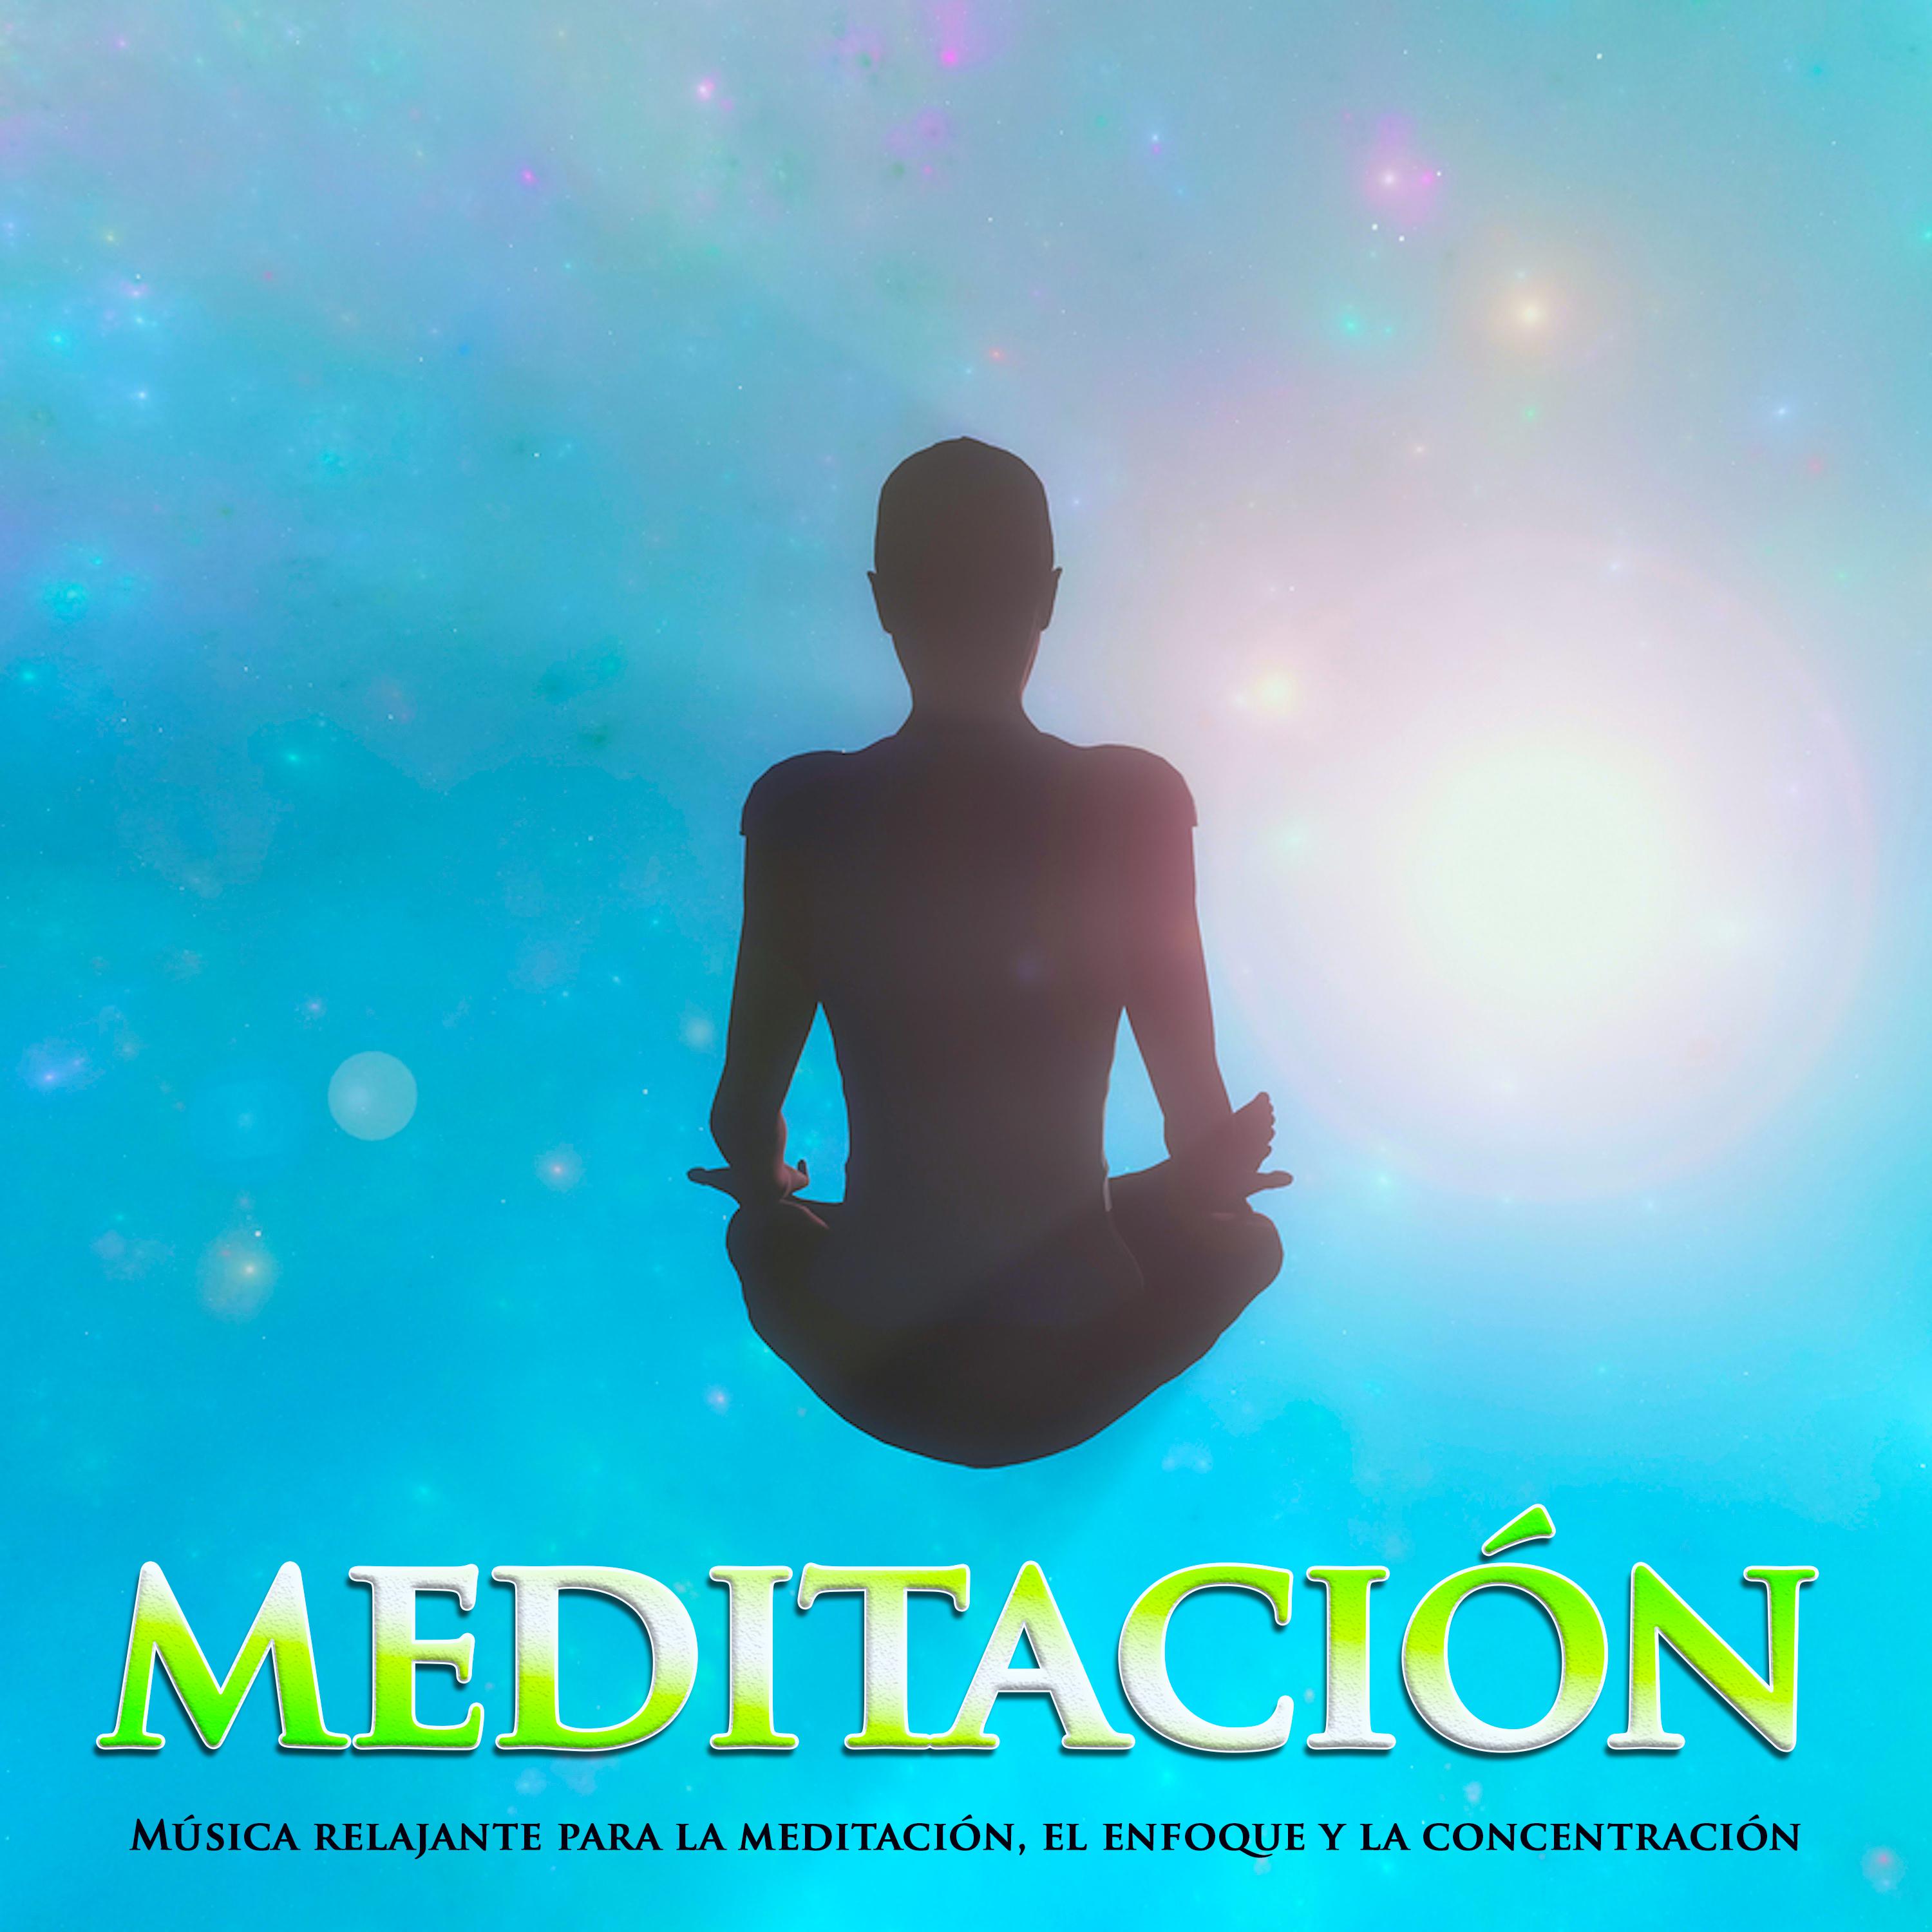 Meditación: Música relajante para la meditación, el enfoque y la concentración